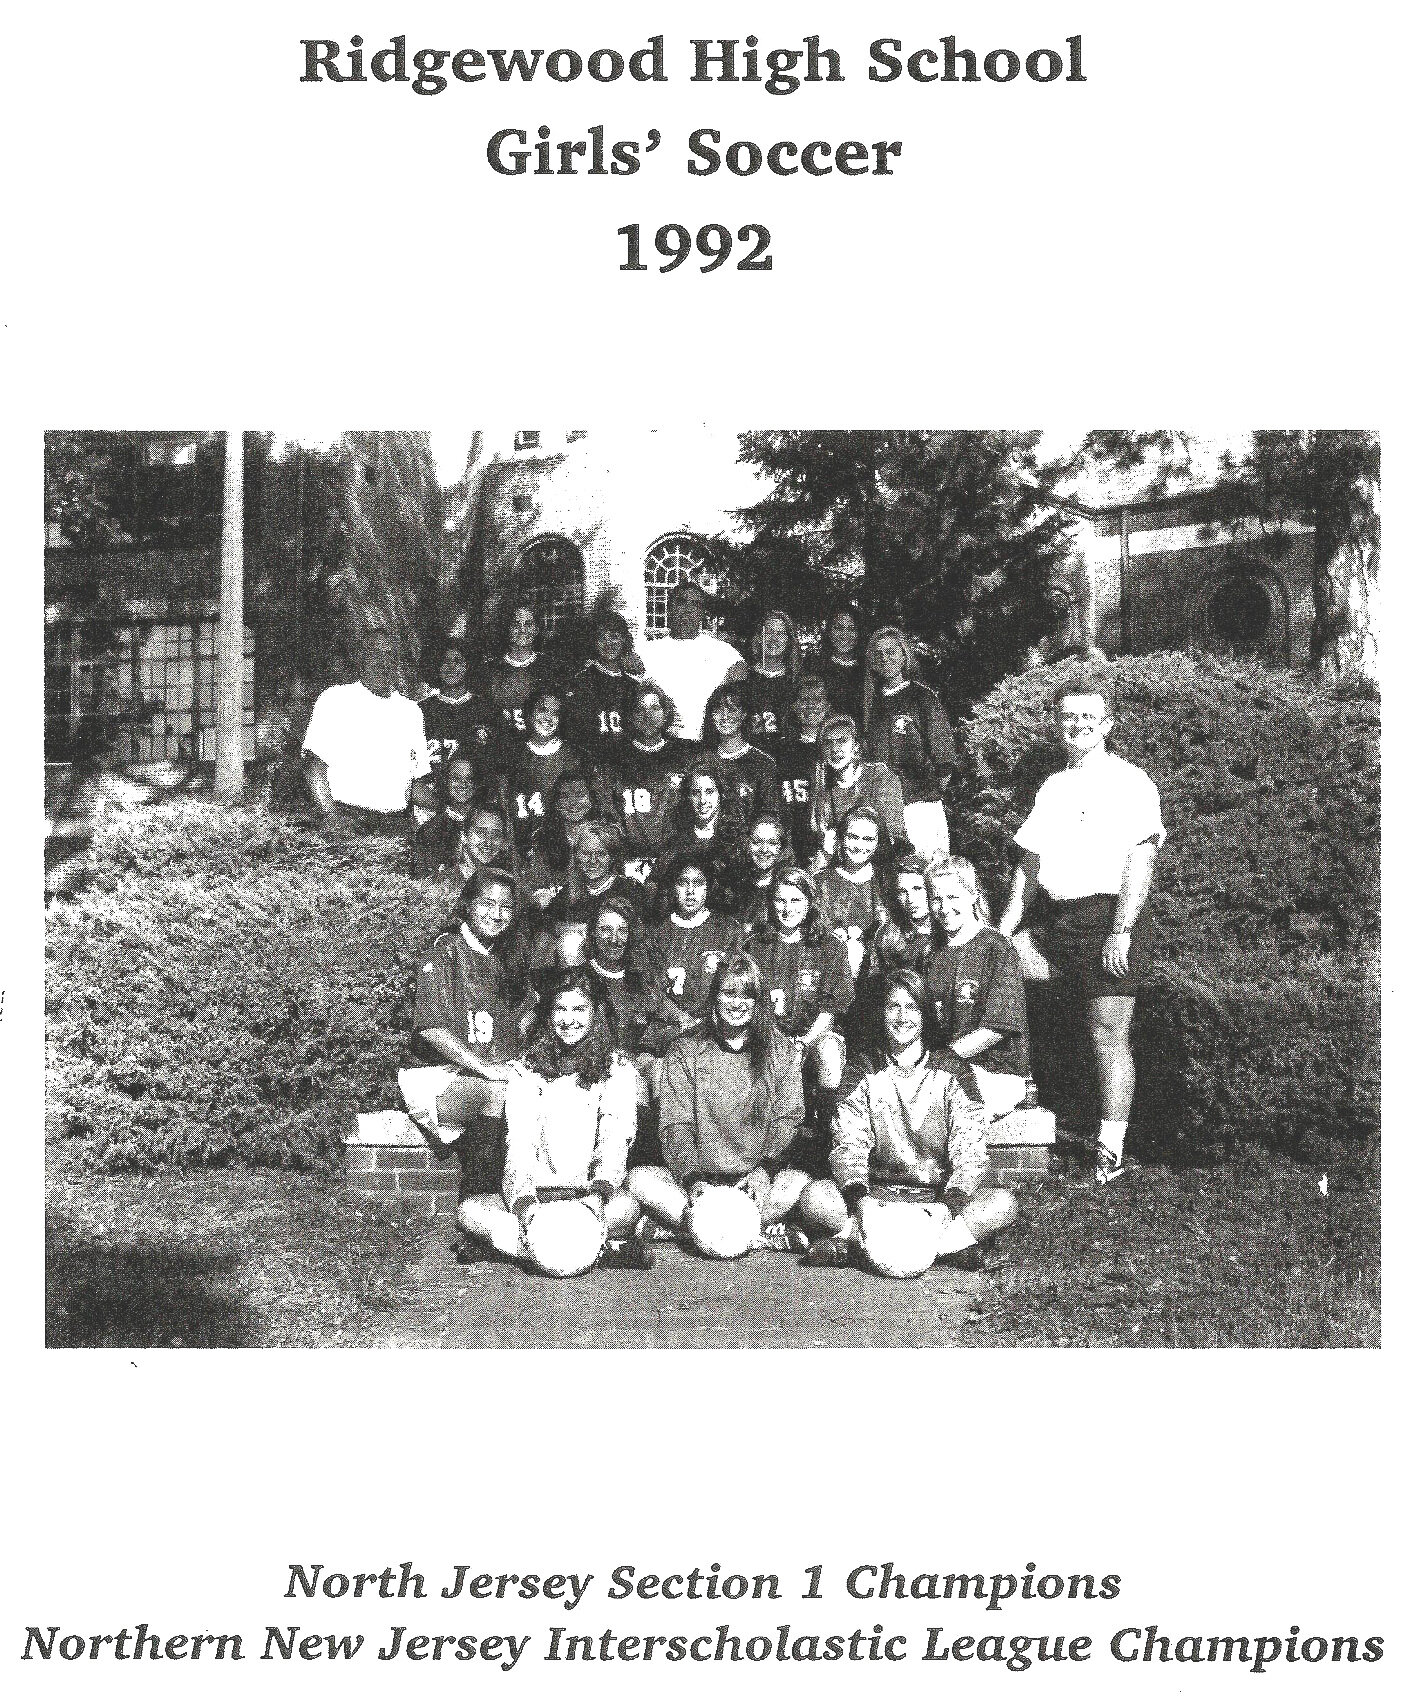 1992 Girls’ Soccer Team